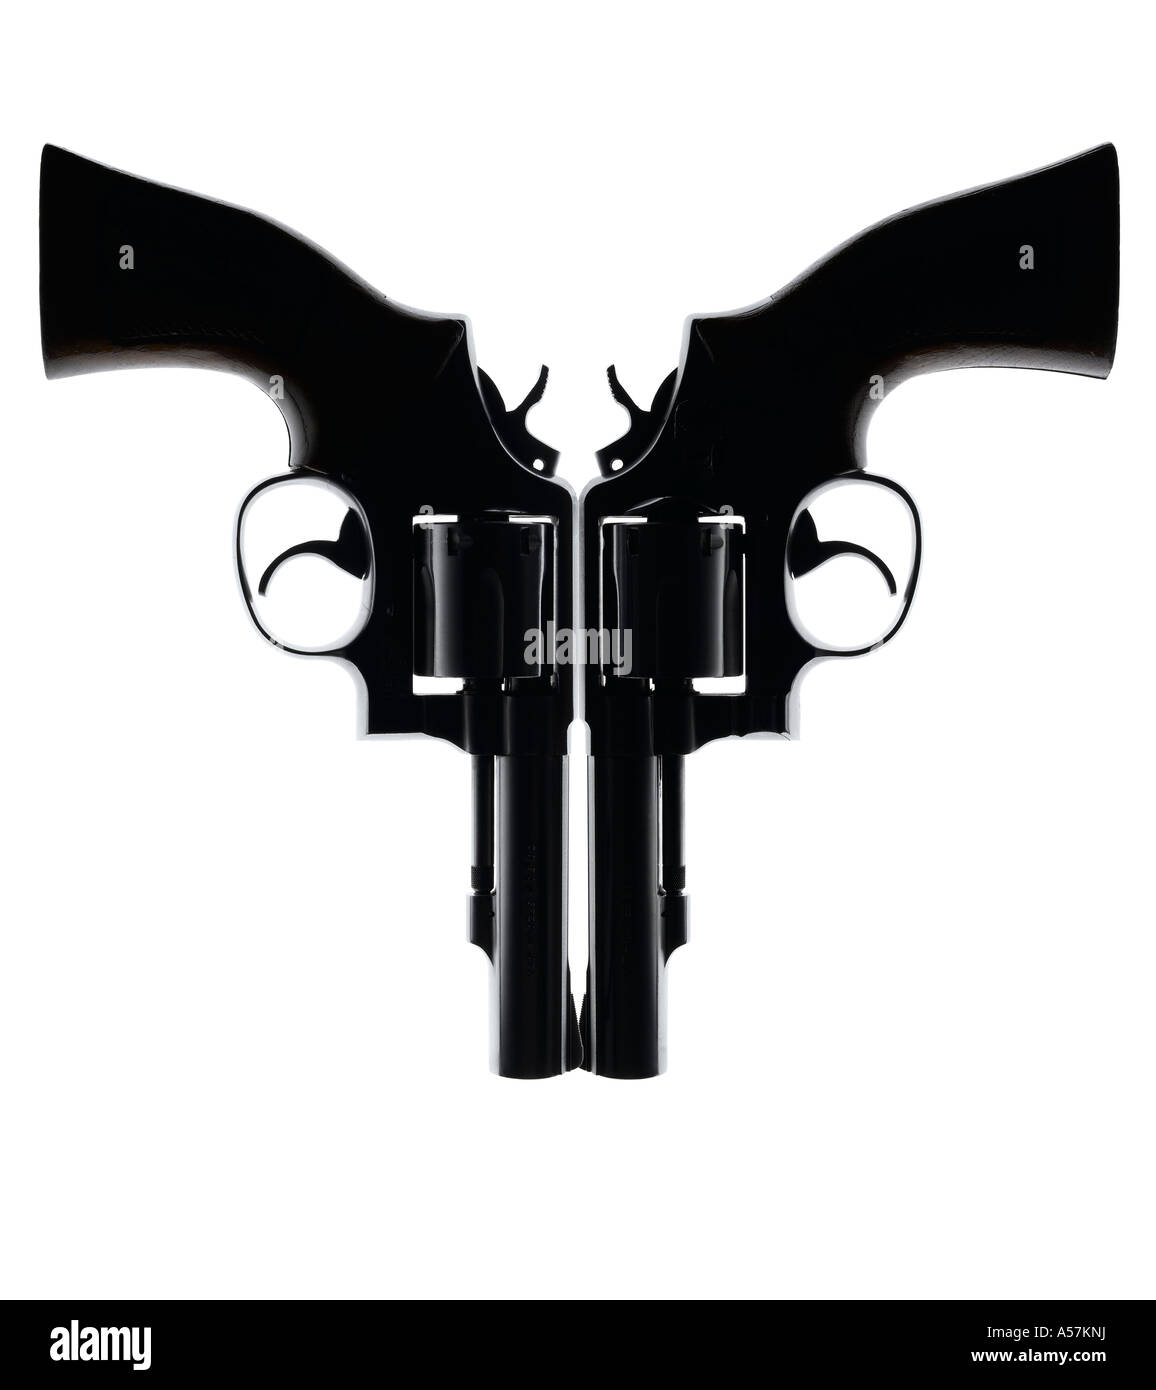 Zwei Handfeuerwaffen kreativ positioniert, um ein Gesicht oder eine interessante Form erstellen Stockfoto